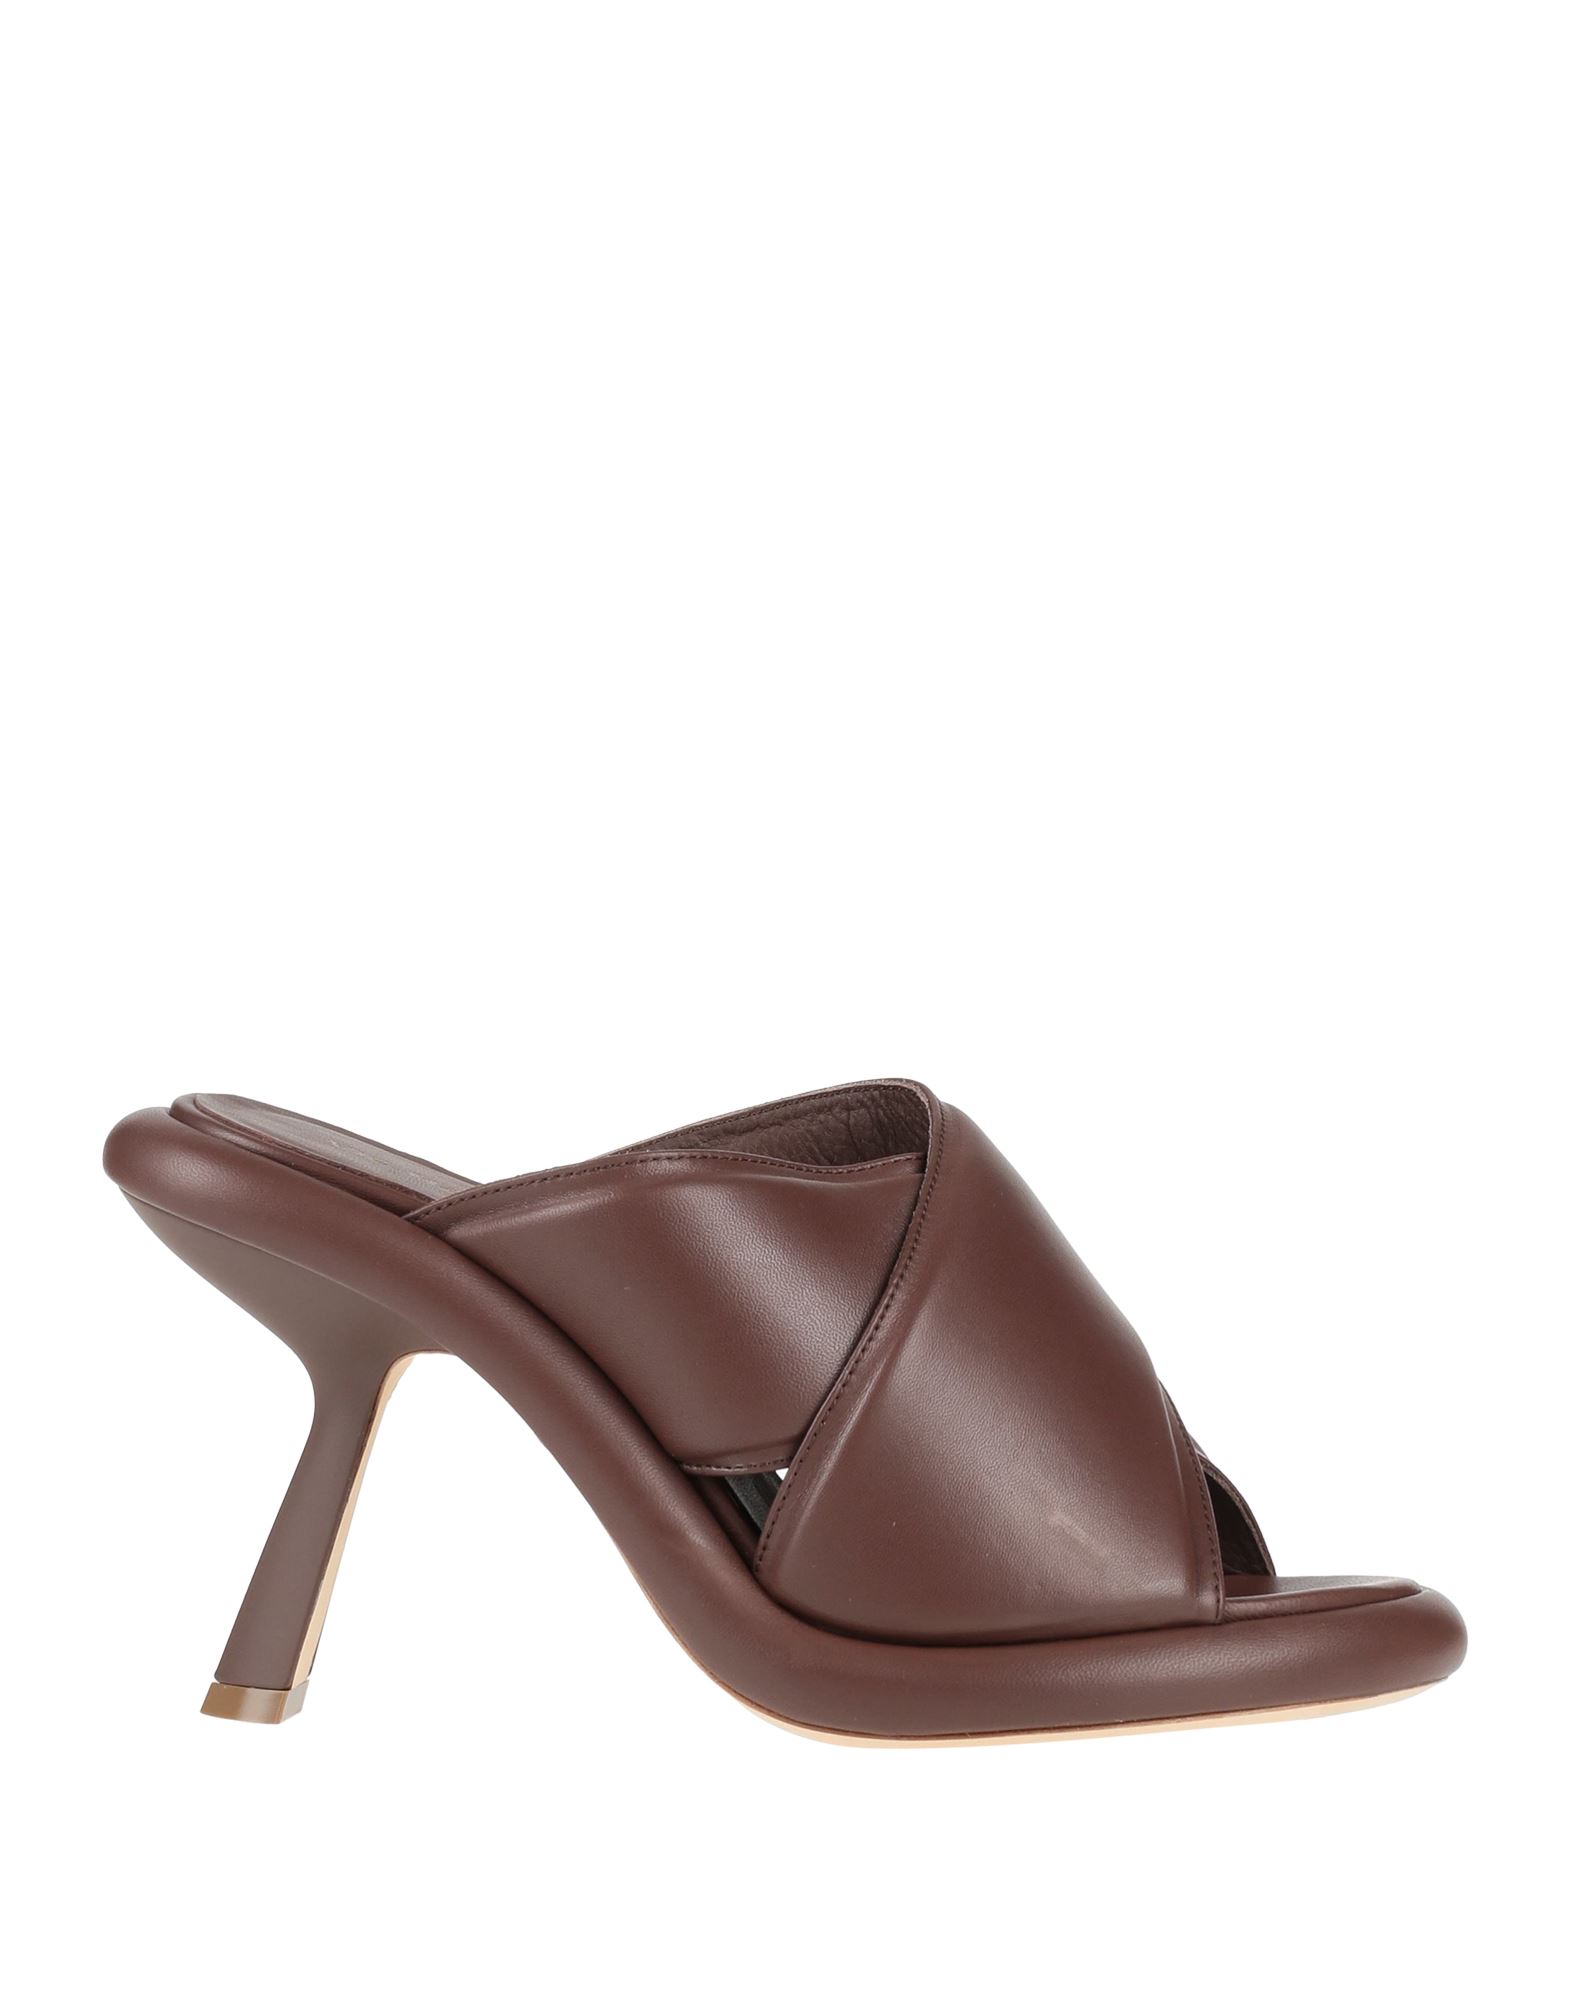 Shop Vic Matie Vic Matiē Woman Sandals Dark Brown Size 8 Leather